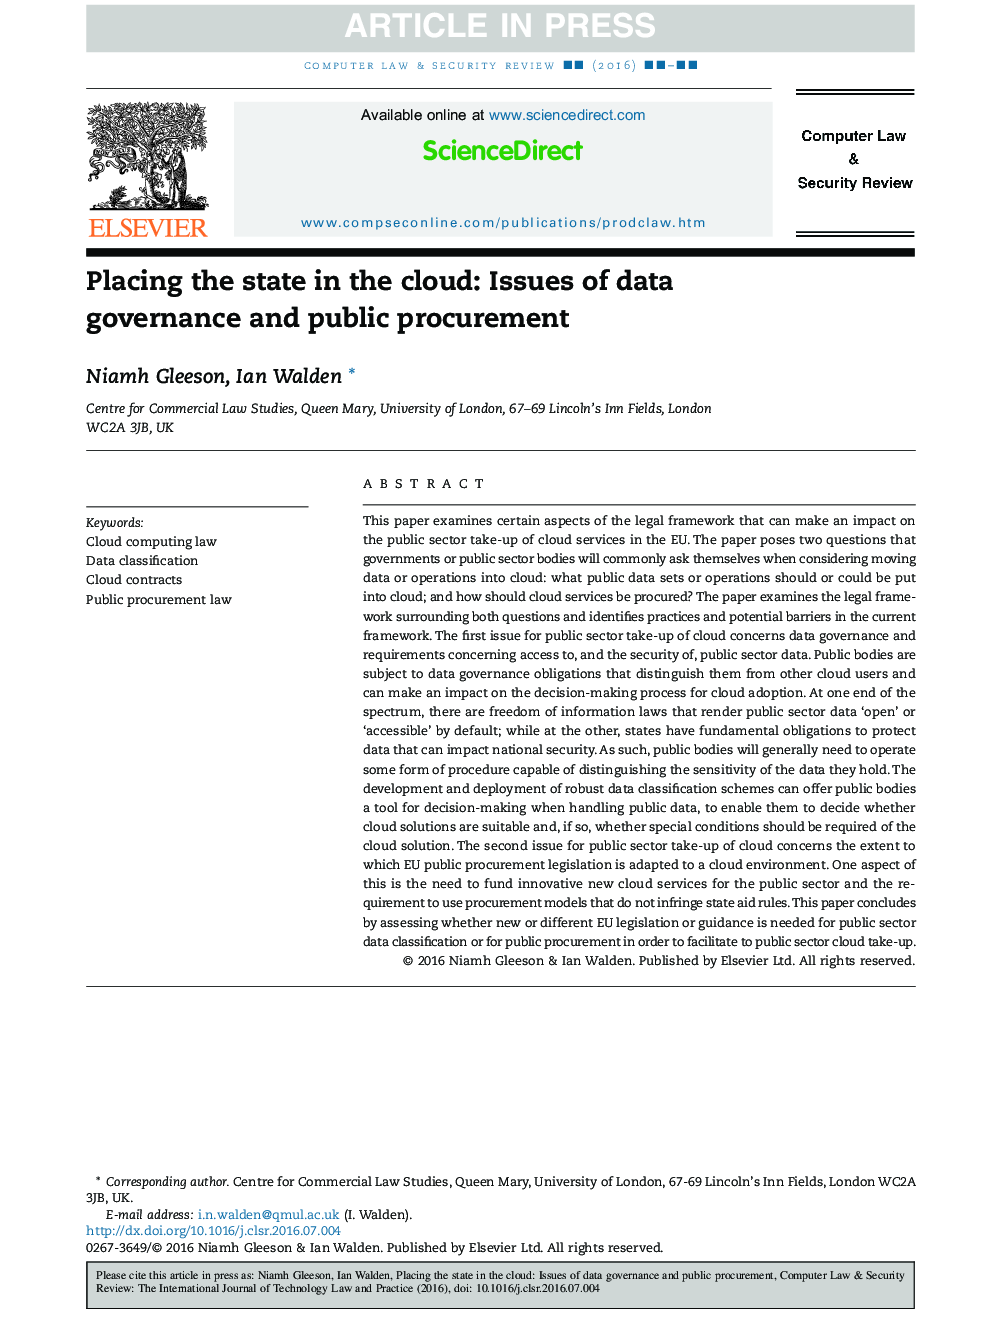 قرار دادن دولت در ابر: مسائل مربوط به اداره داده ها و تهیه های عمومی 